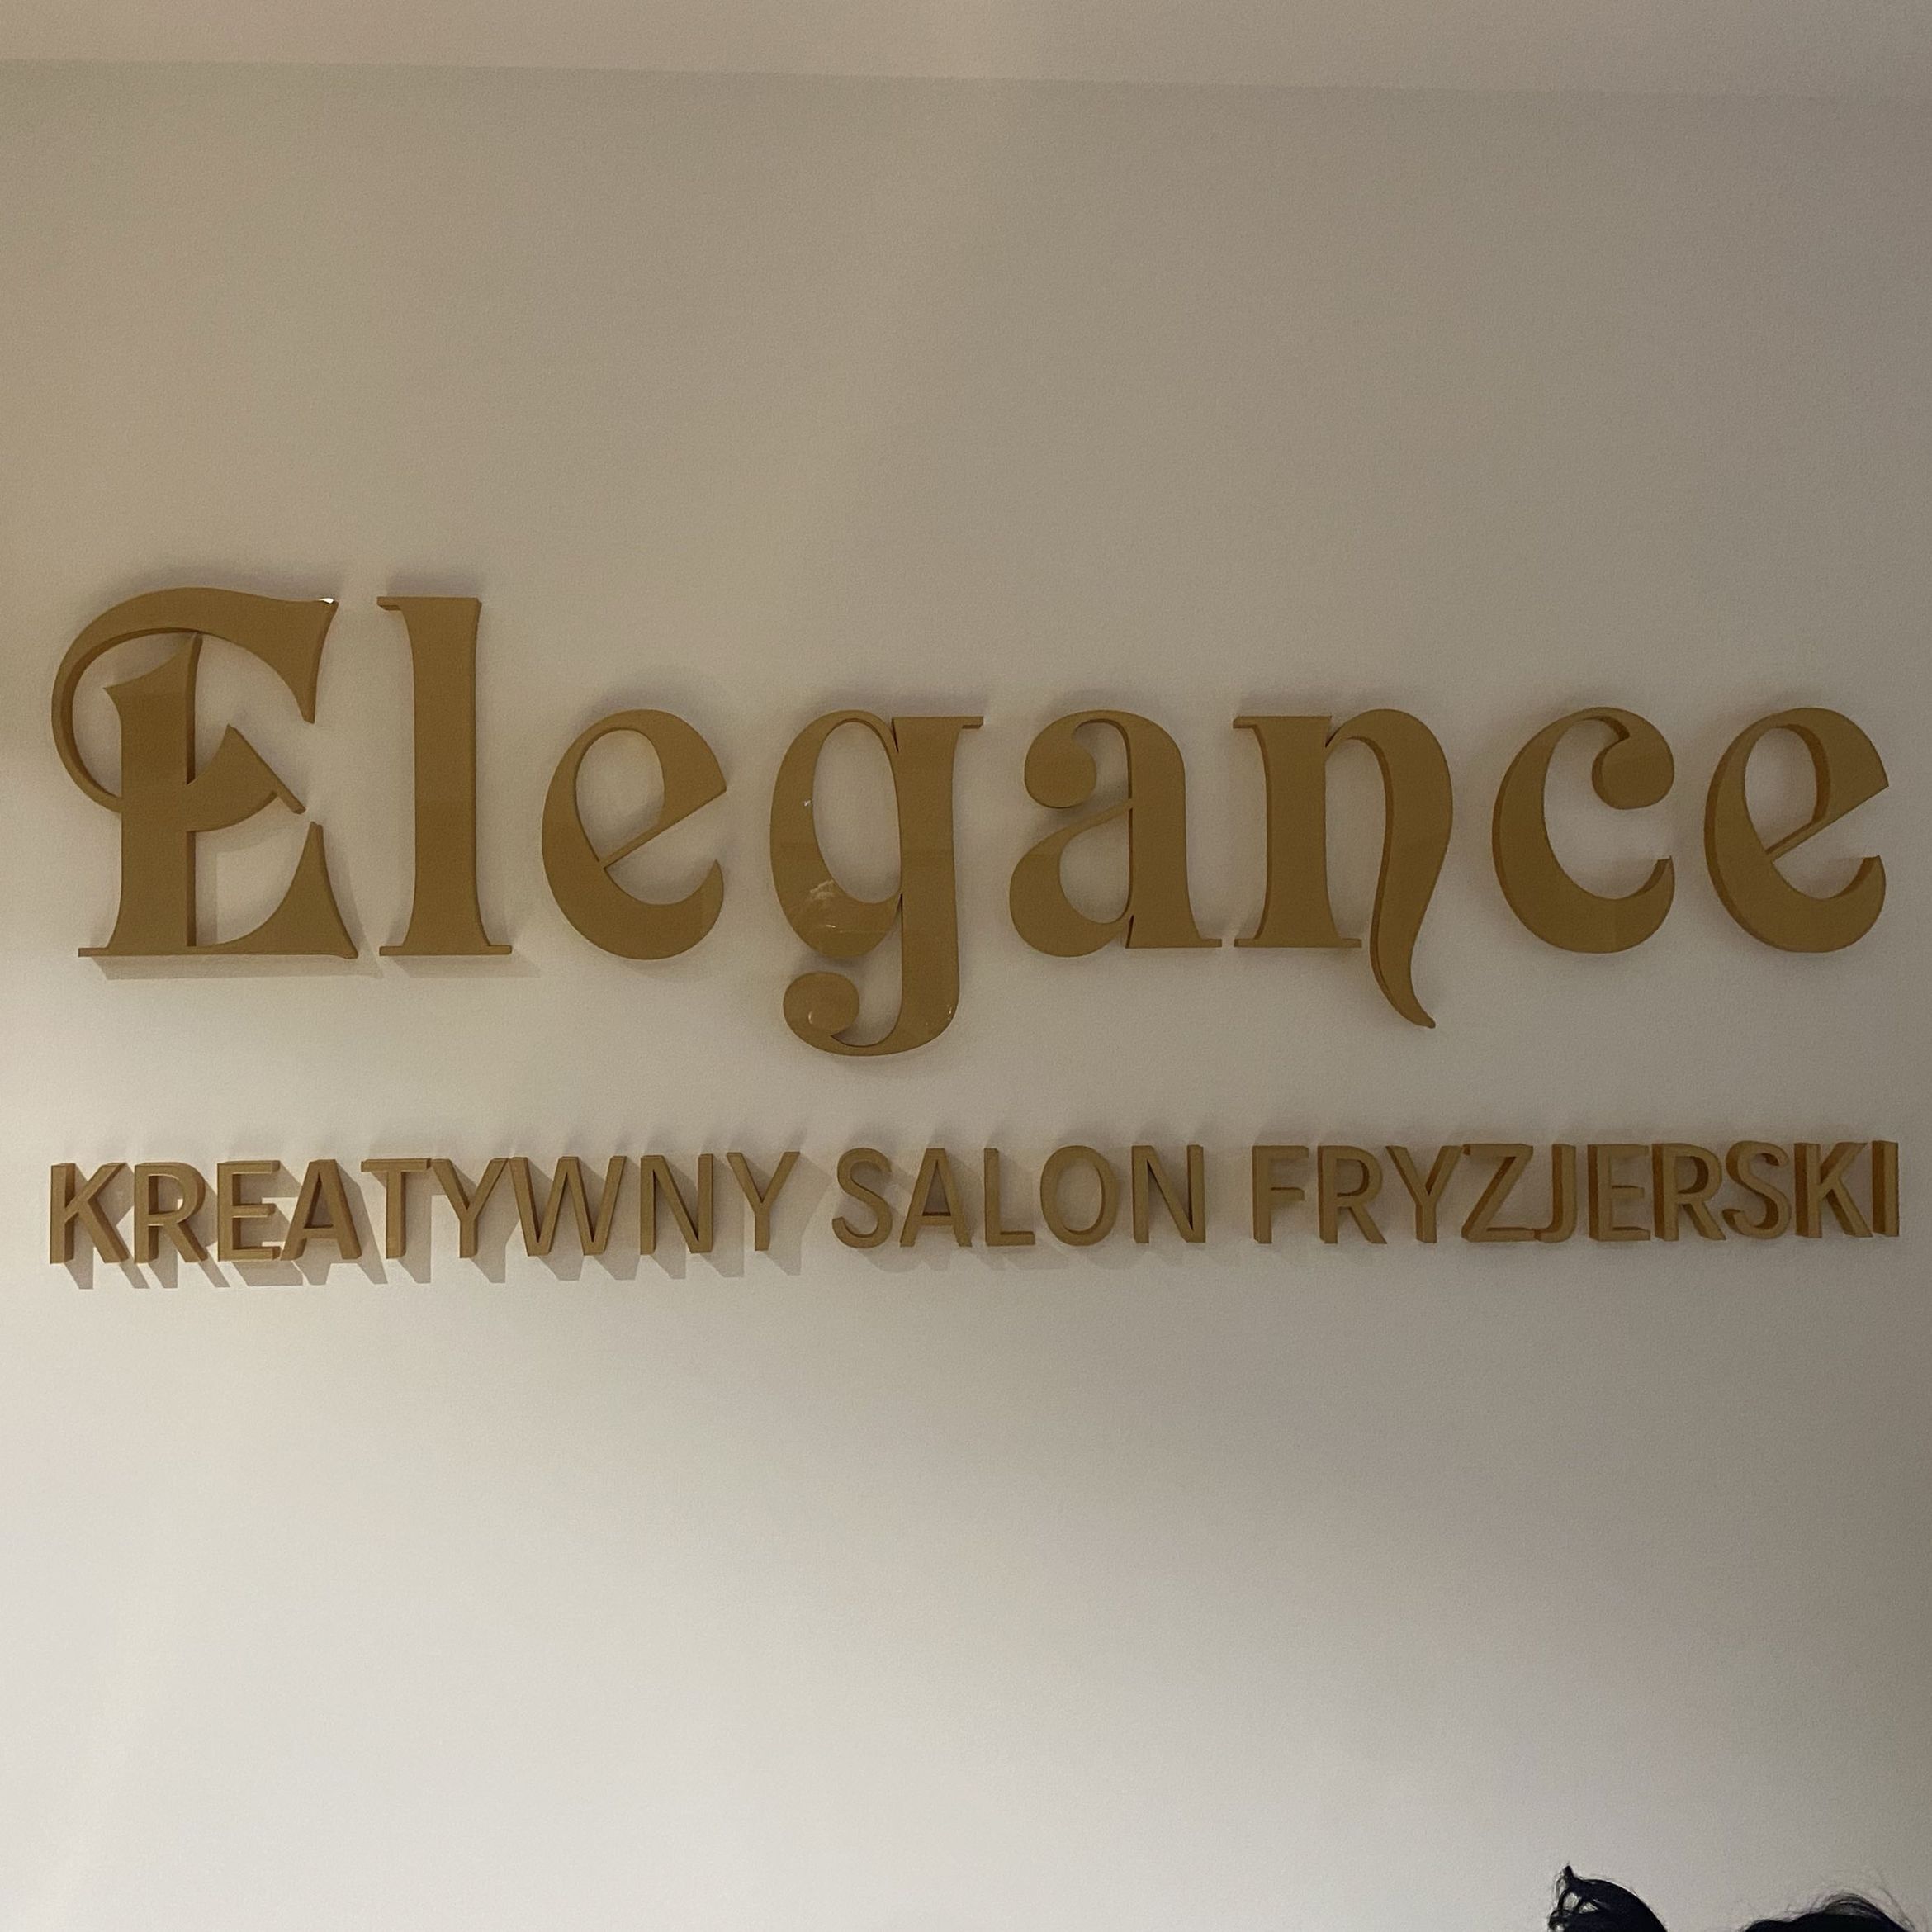 Elegance Salon Fryzjerski, Kupiecka 32, 4, 65-058, Zielona Góra